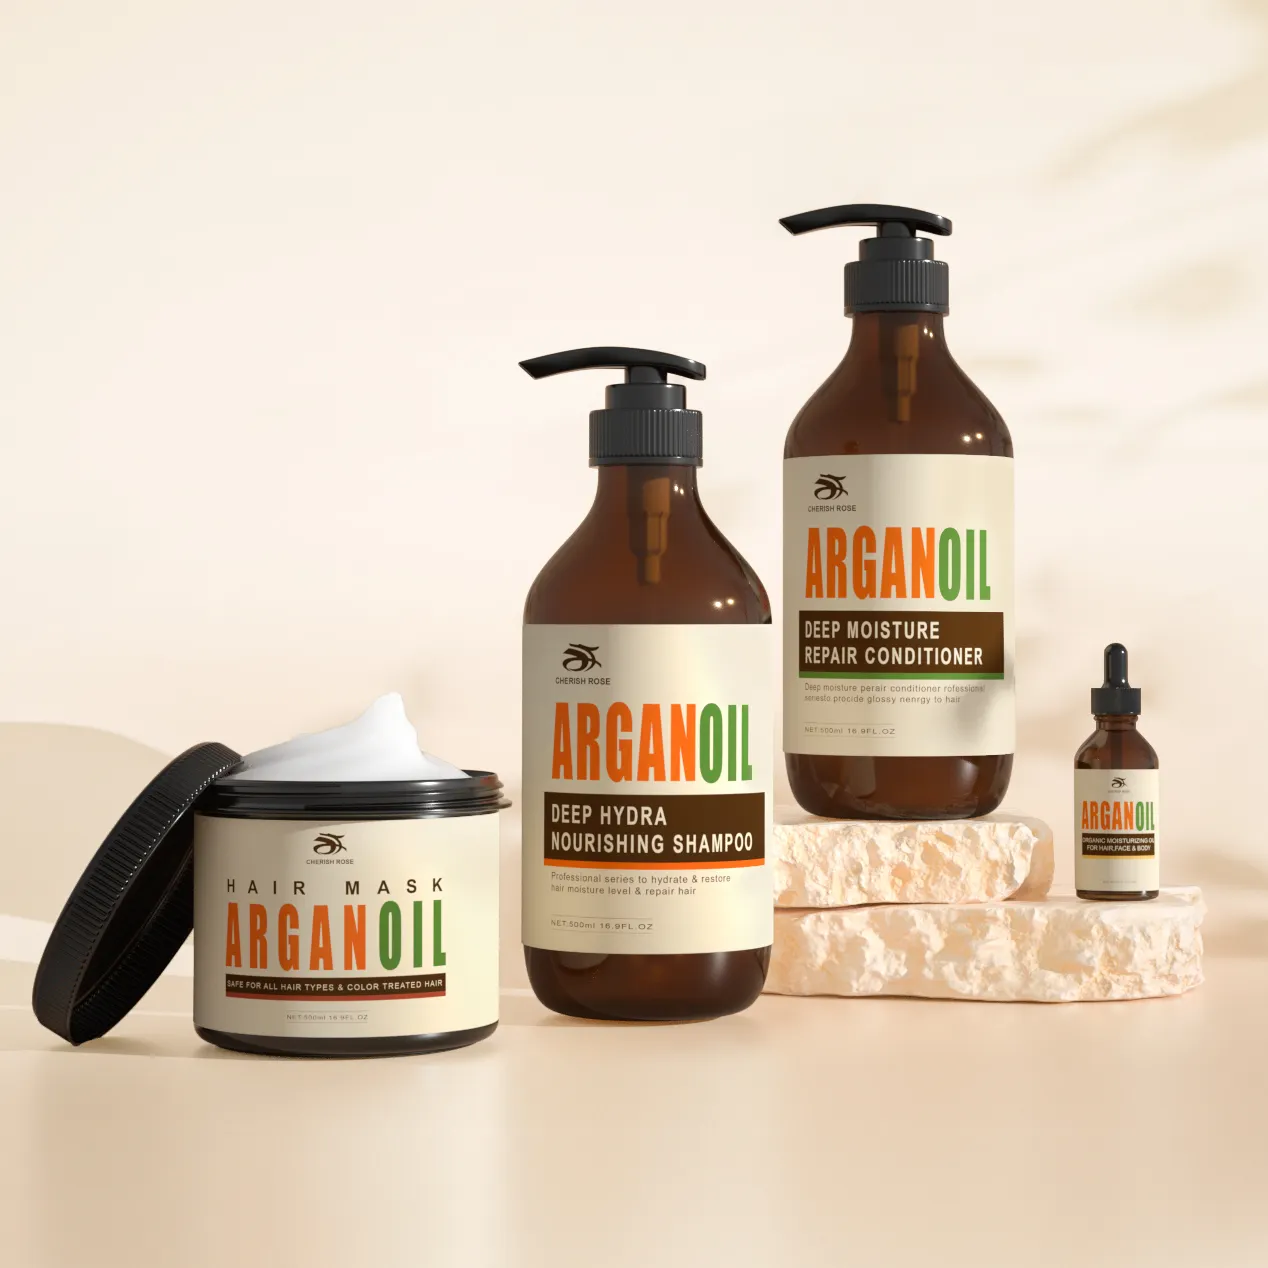 HuaXia sülfat ücretsiz özel etiket inanılmaz yumuşak Vegan doğal Argan yağı saç şampuan ve saç kremi